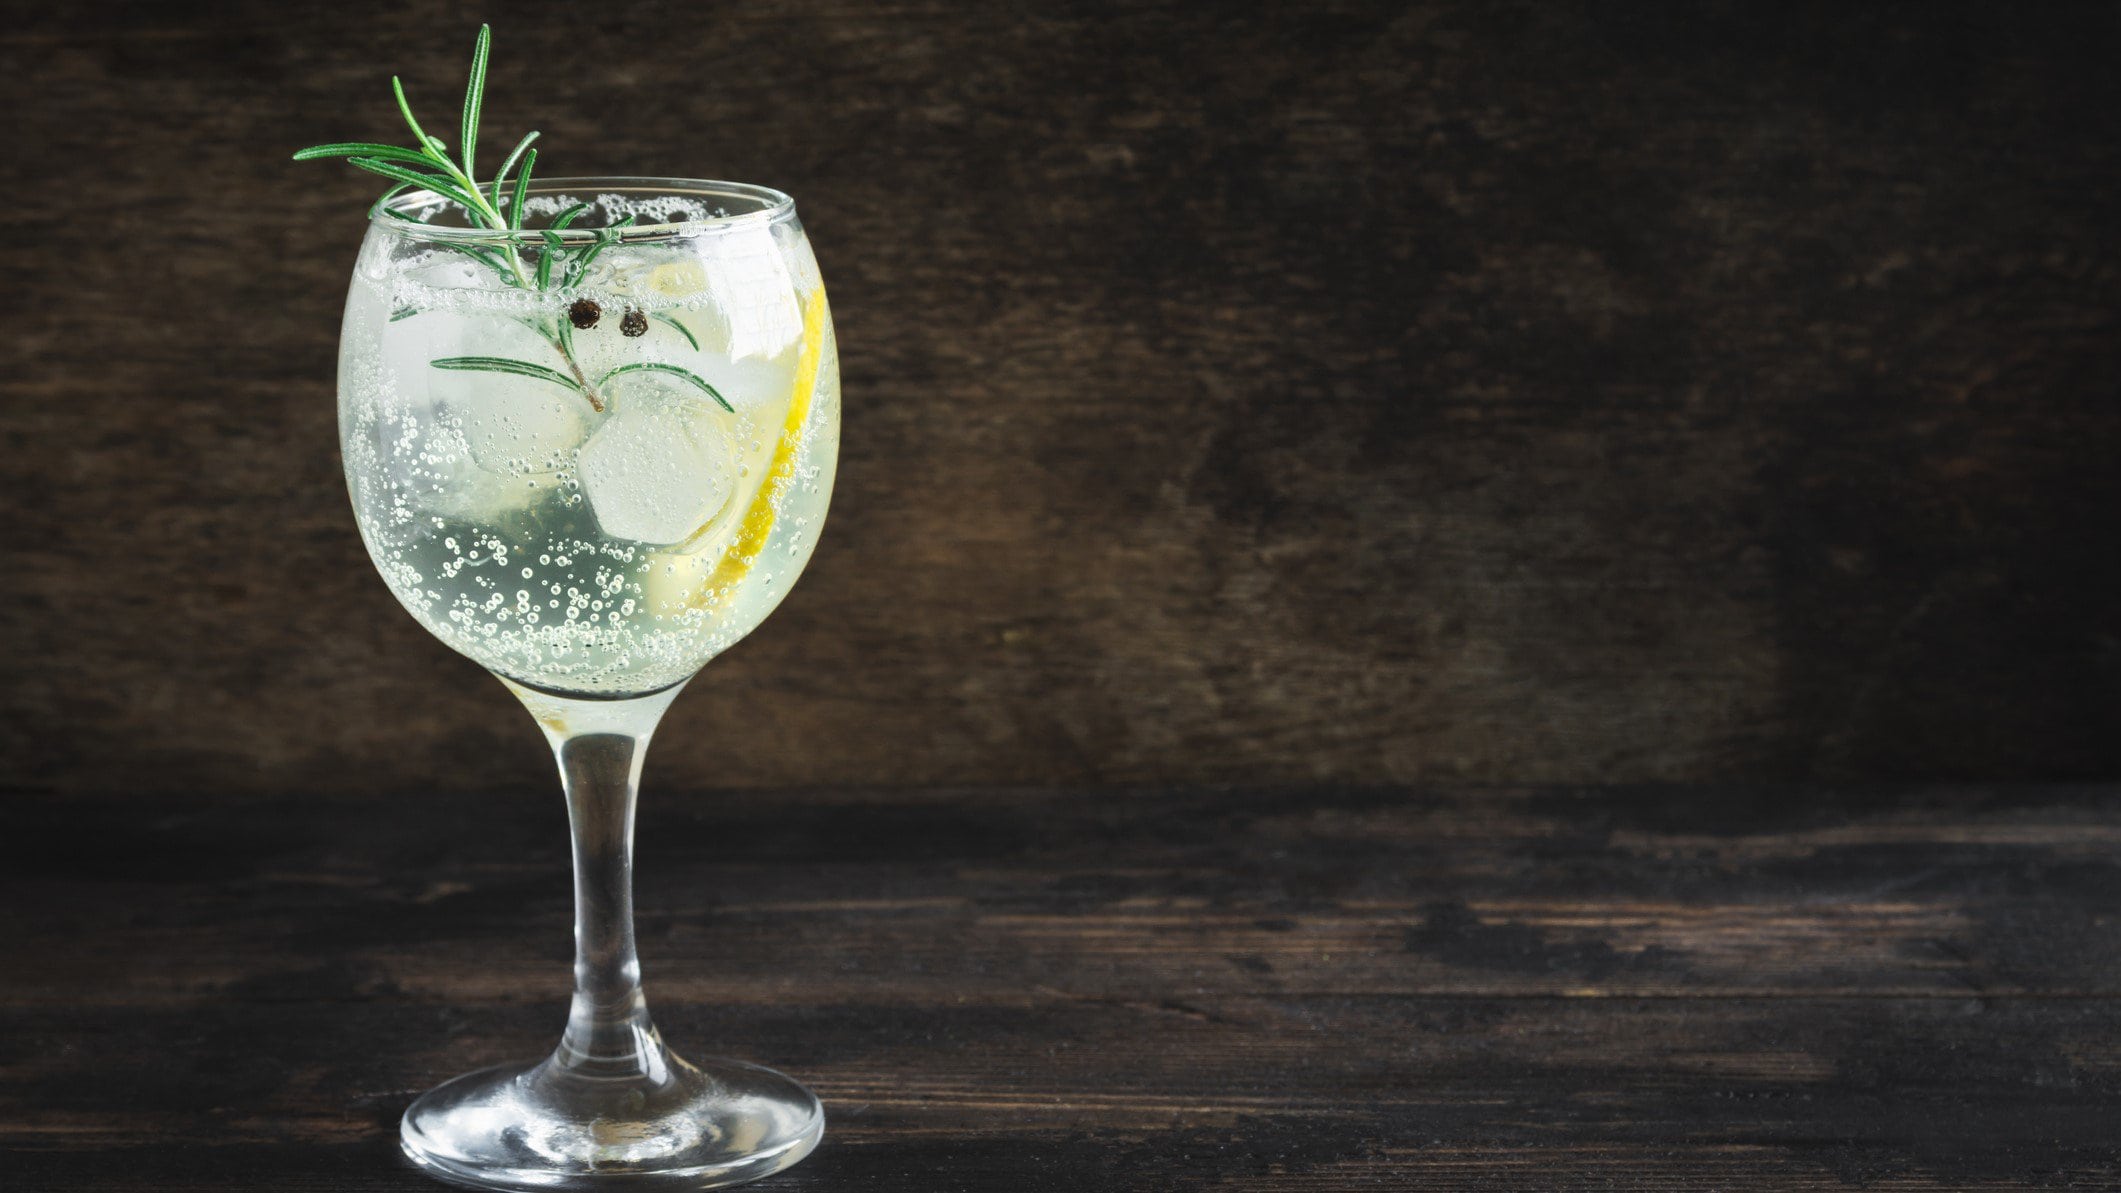 Ein Glas Gin Tonic Spritz mit einer Zitronenscheibe, Rosmarin und Eiswürfeln, vor einem dunklen Hintergrund.